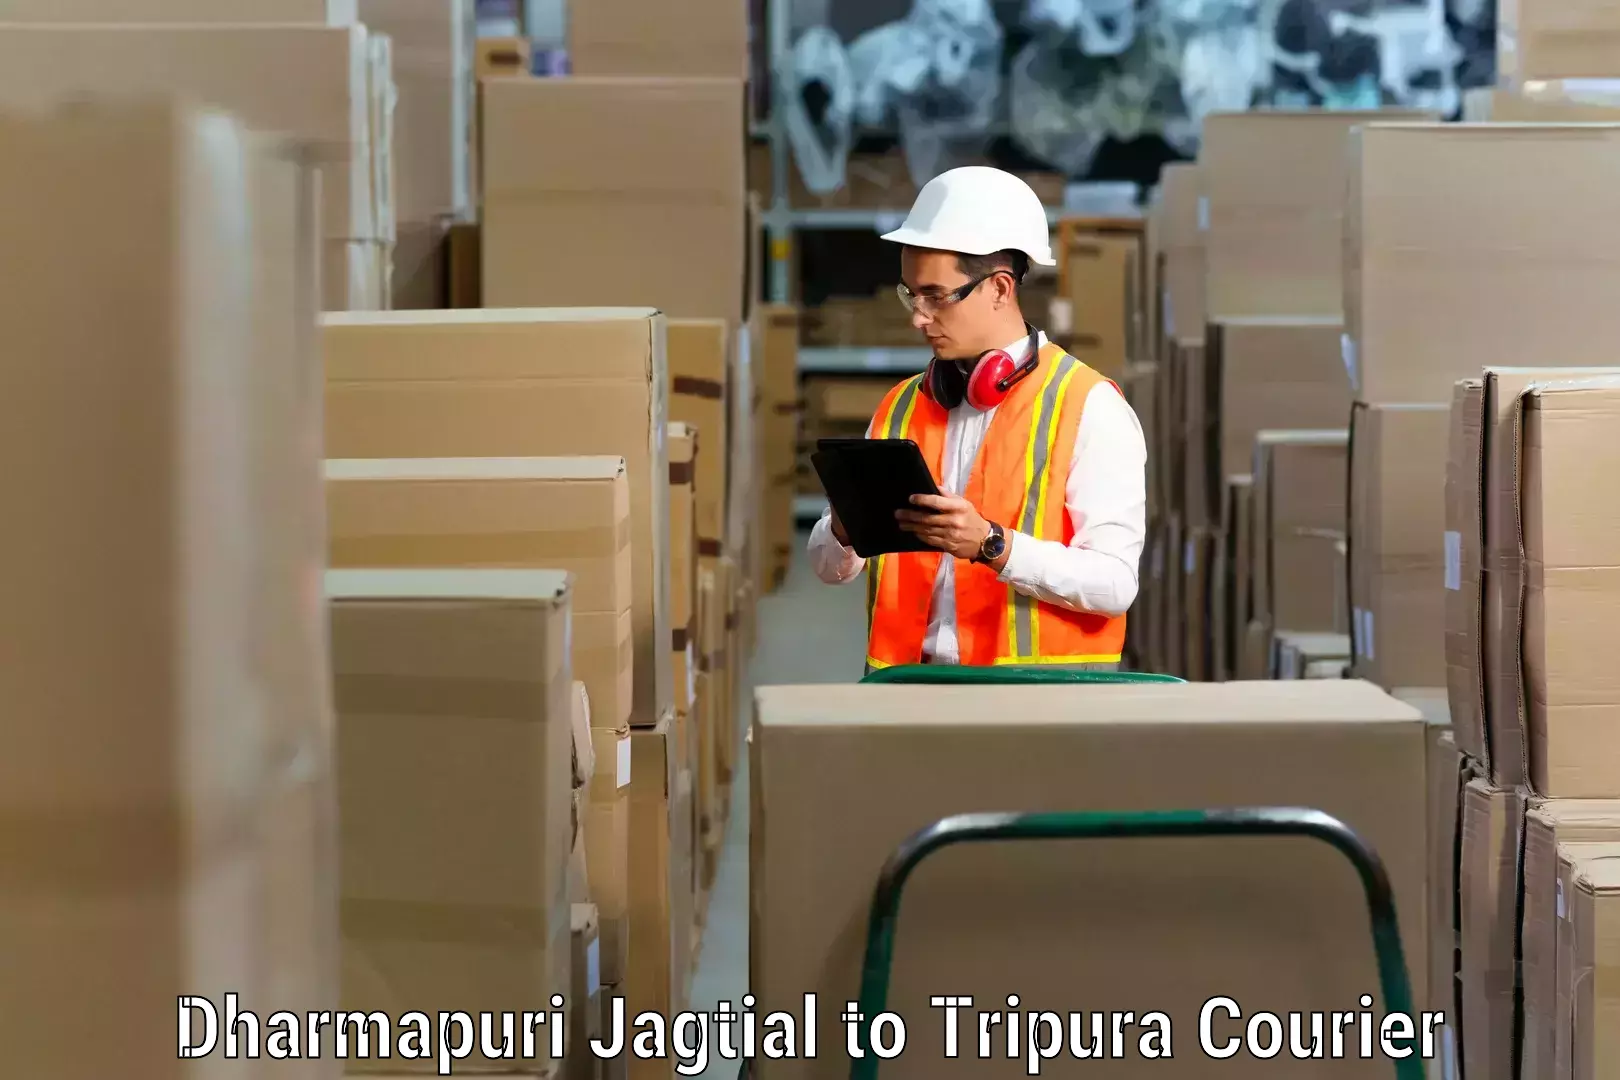 Furniture transport solutions Dharmapuri Jagtial to Dharmanagar